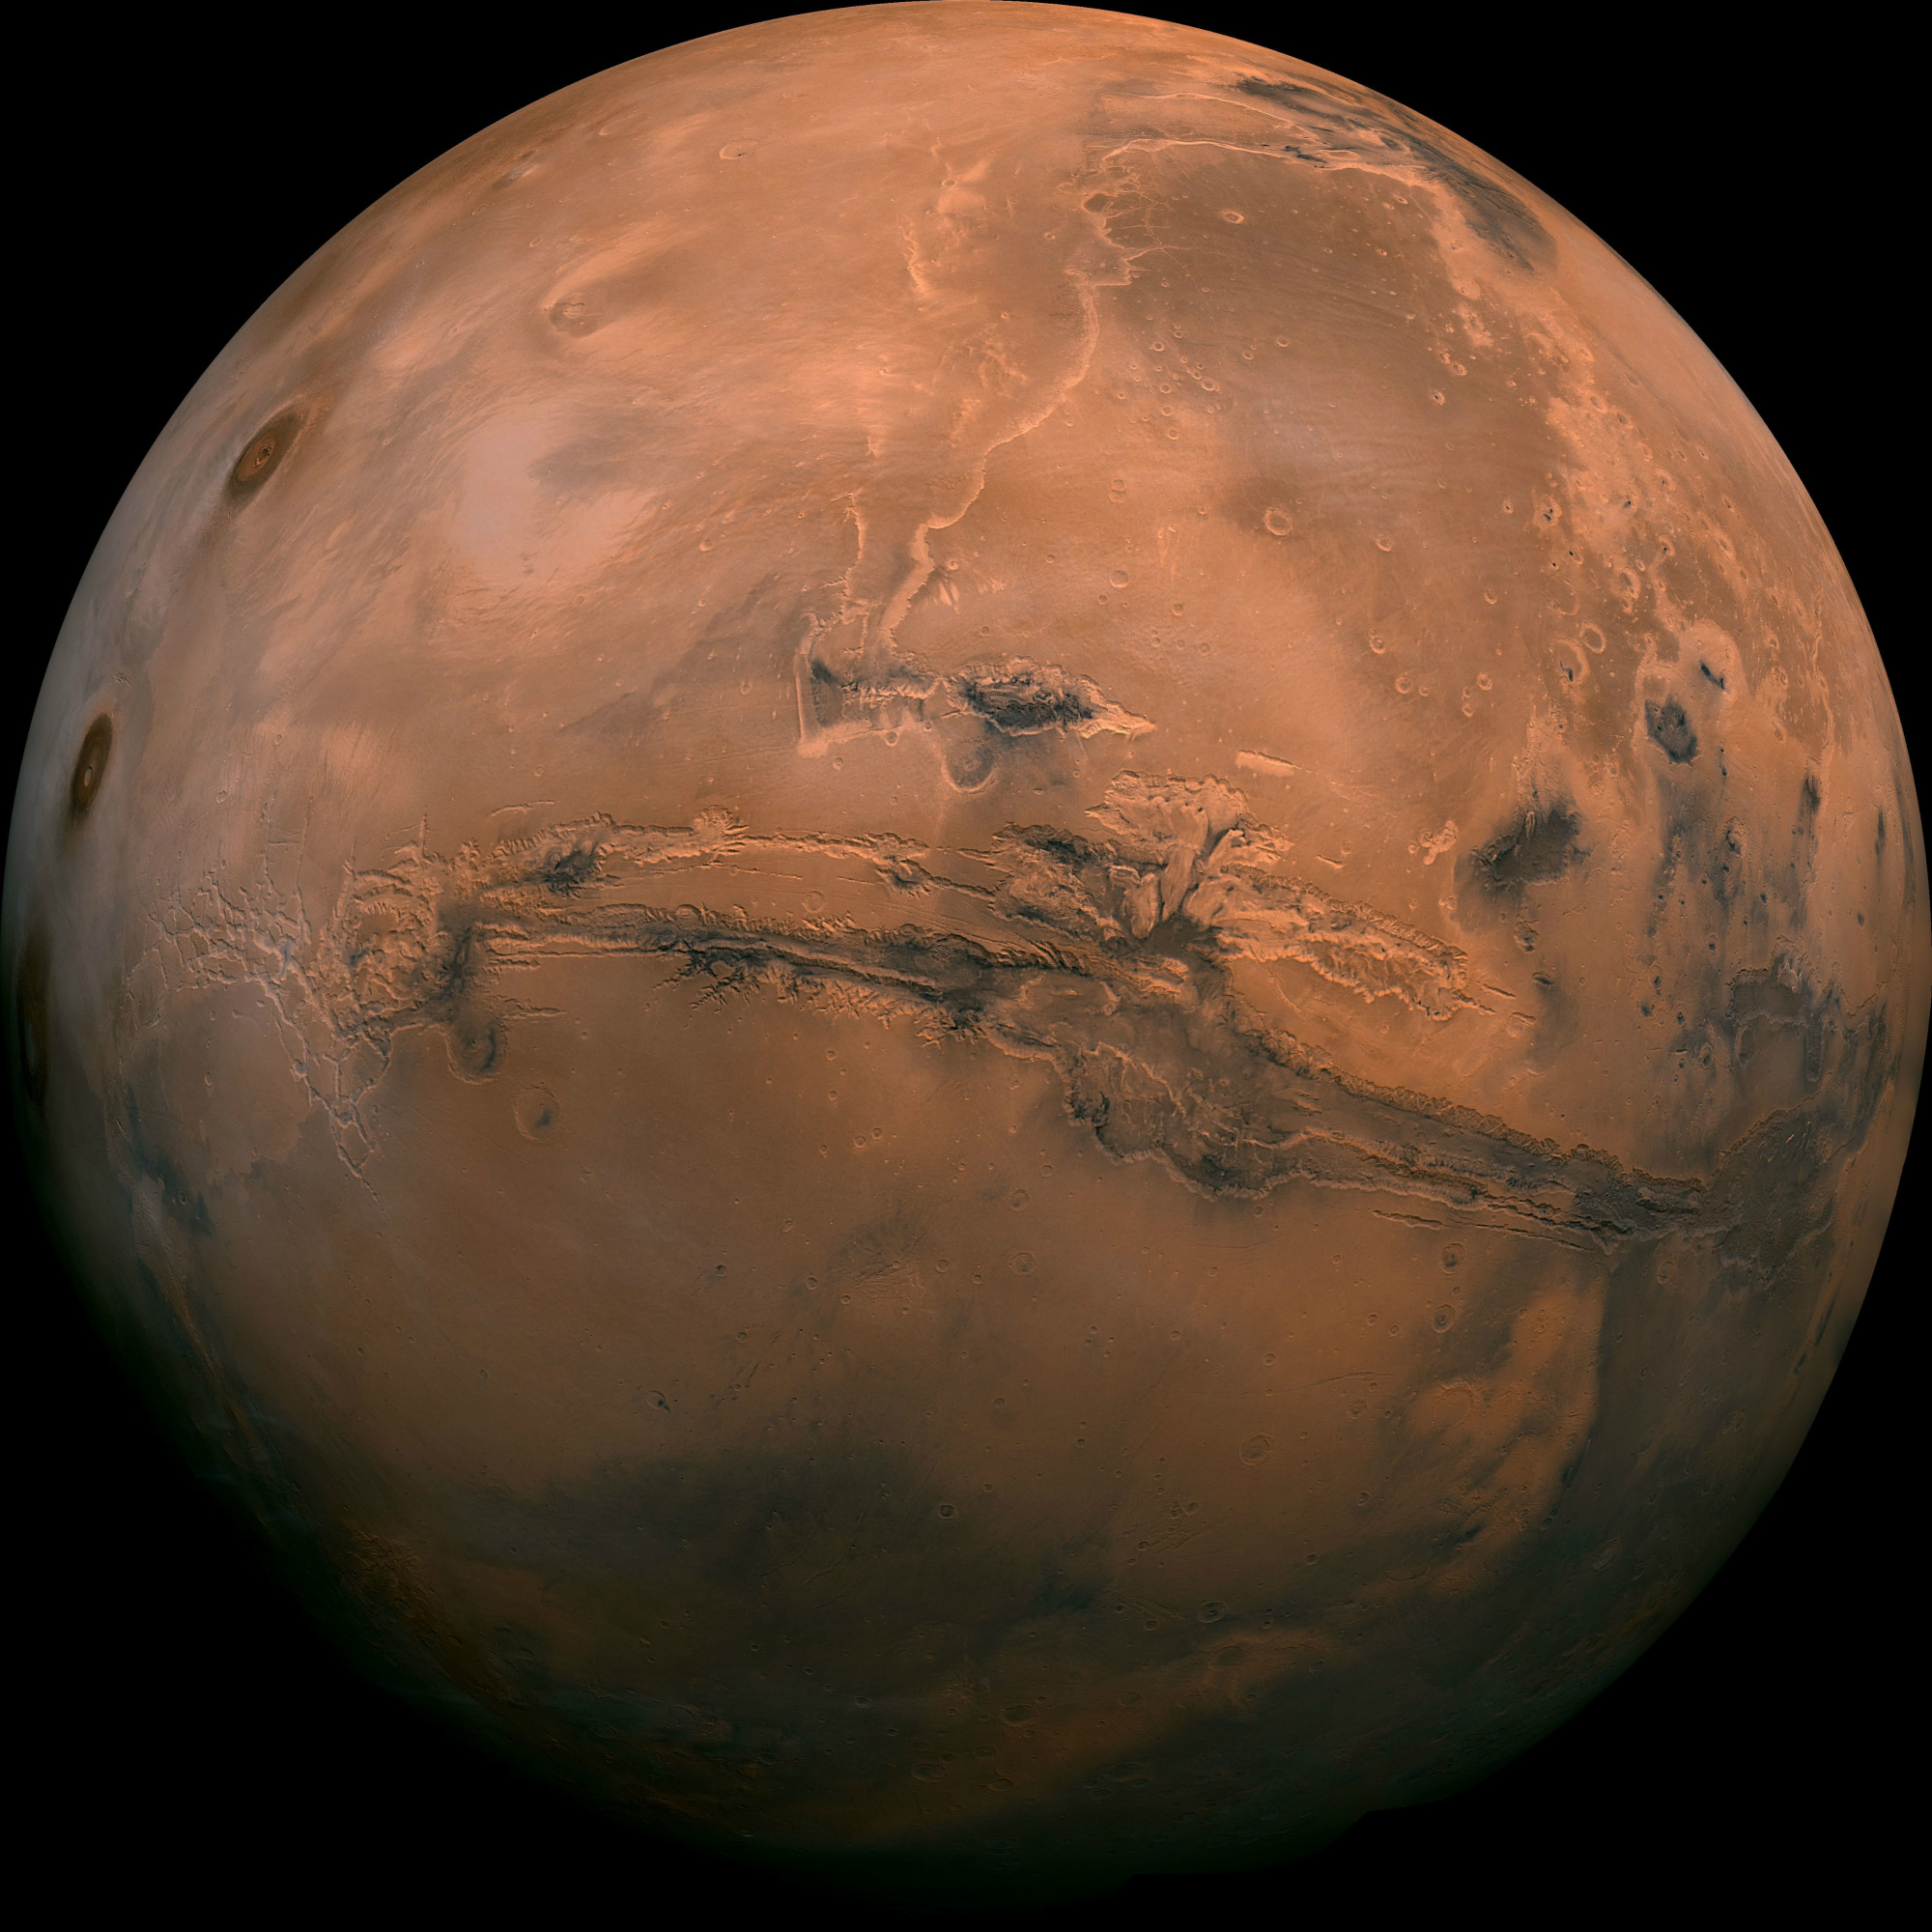 Imagen obtenida por la NASA de la superficie de Marte